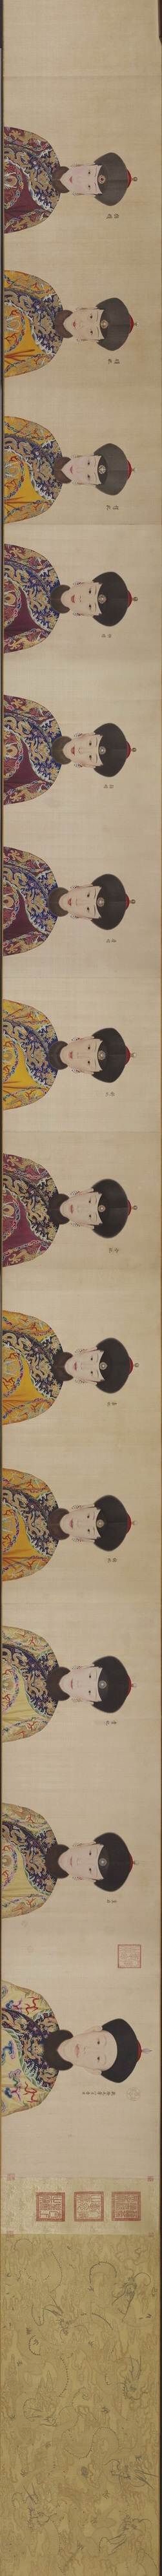 郎世宁《高宗帝后像》绢本着色 52.9x 688.3厘米现藏美国克利夫兰博物馆